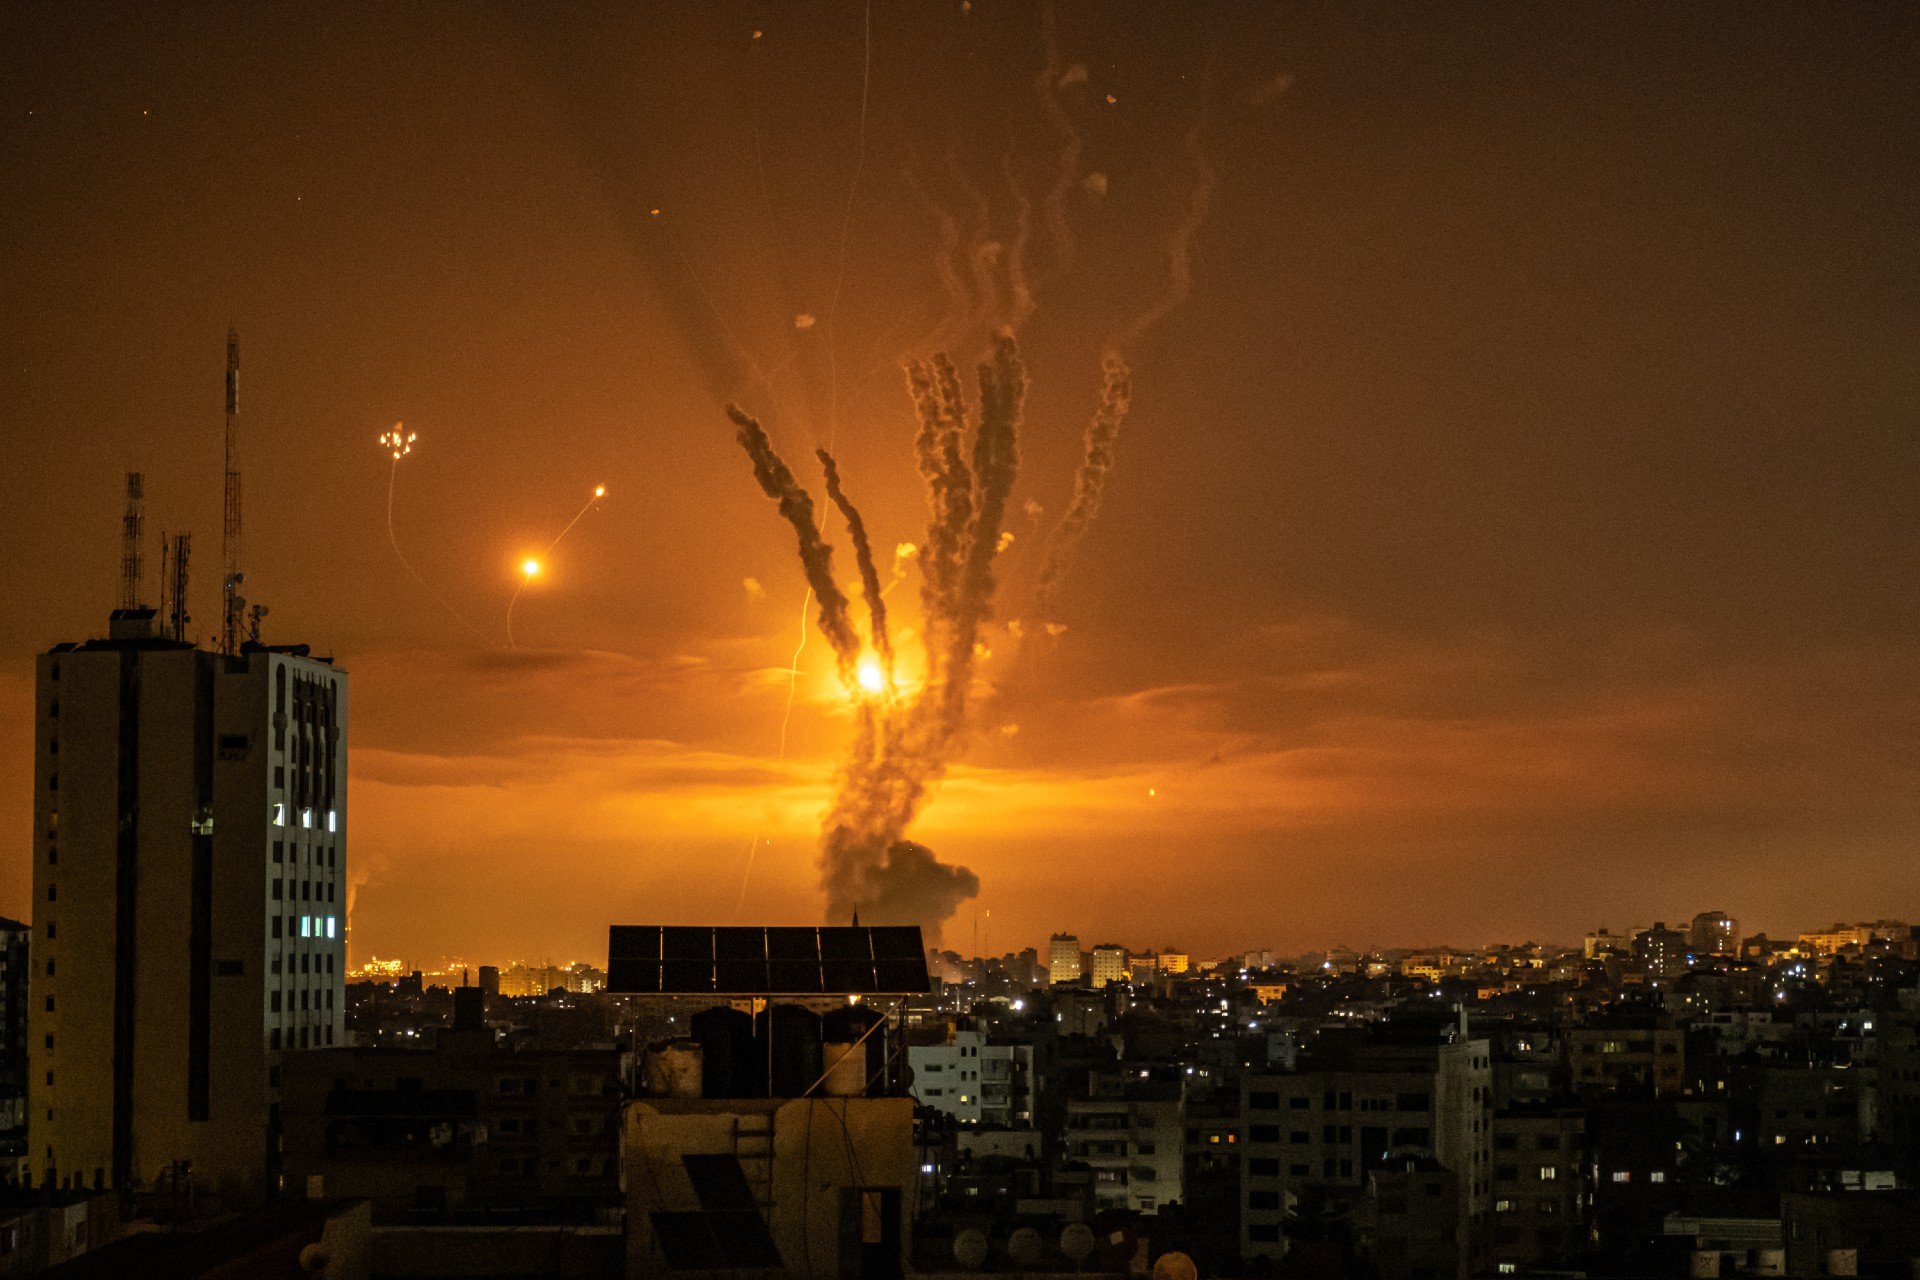 Ракеты, запущенные в направлении Израиля, и ответная реакция израильской системы противоракетной обороны, известной как Железный купол. Фото: Fatima Shbair / Getty Images